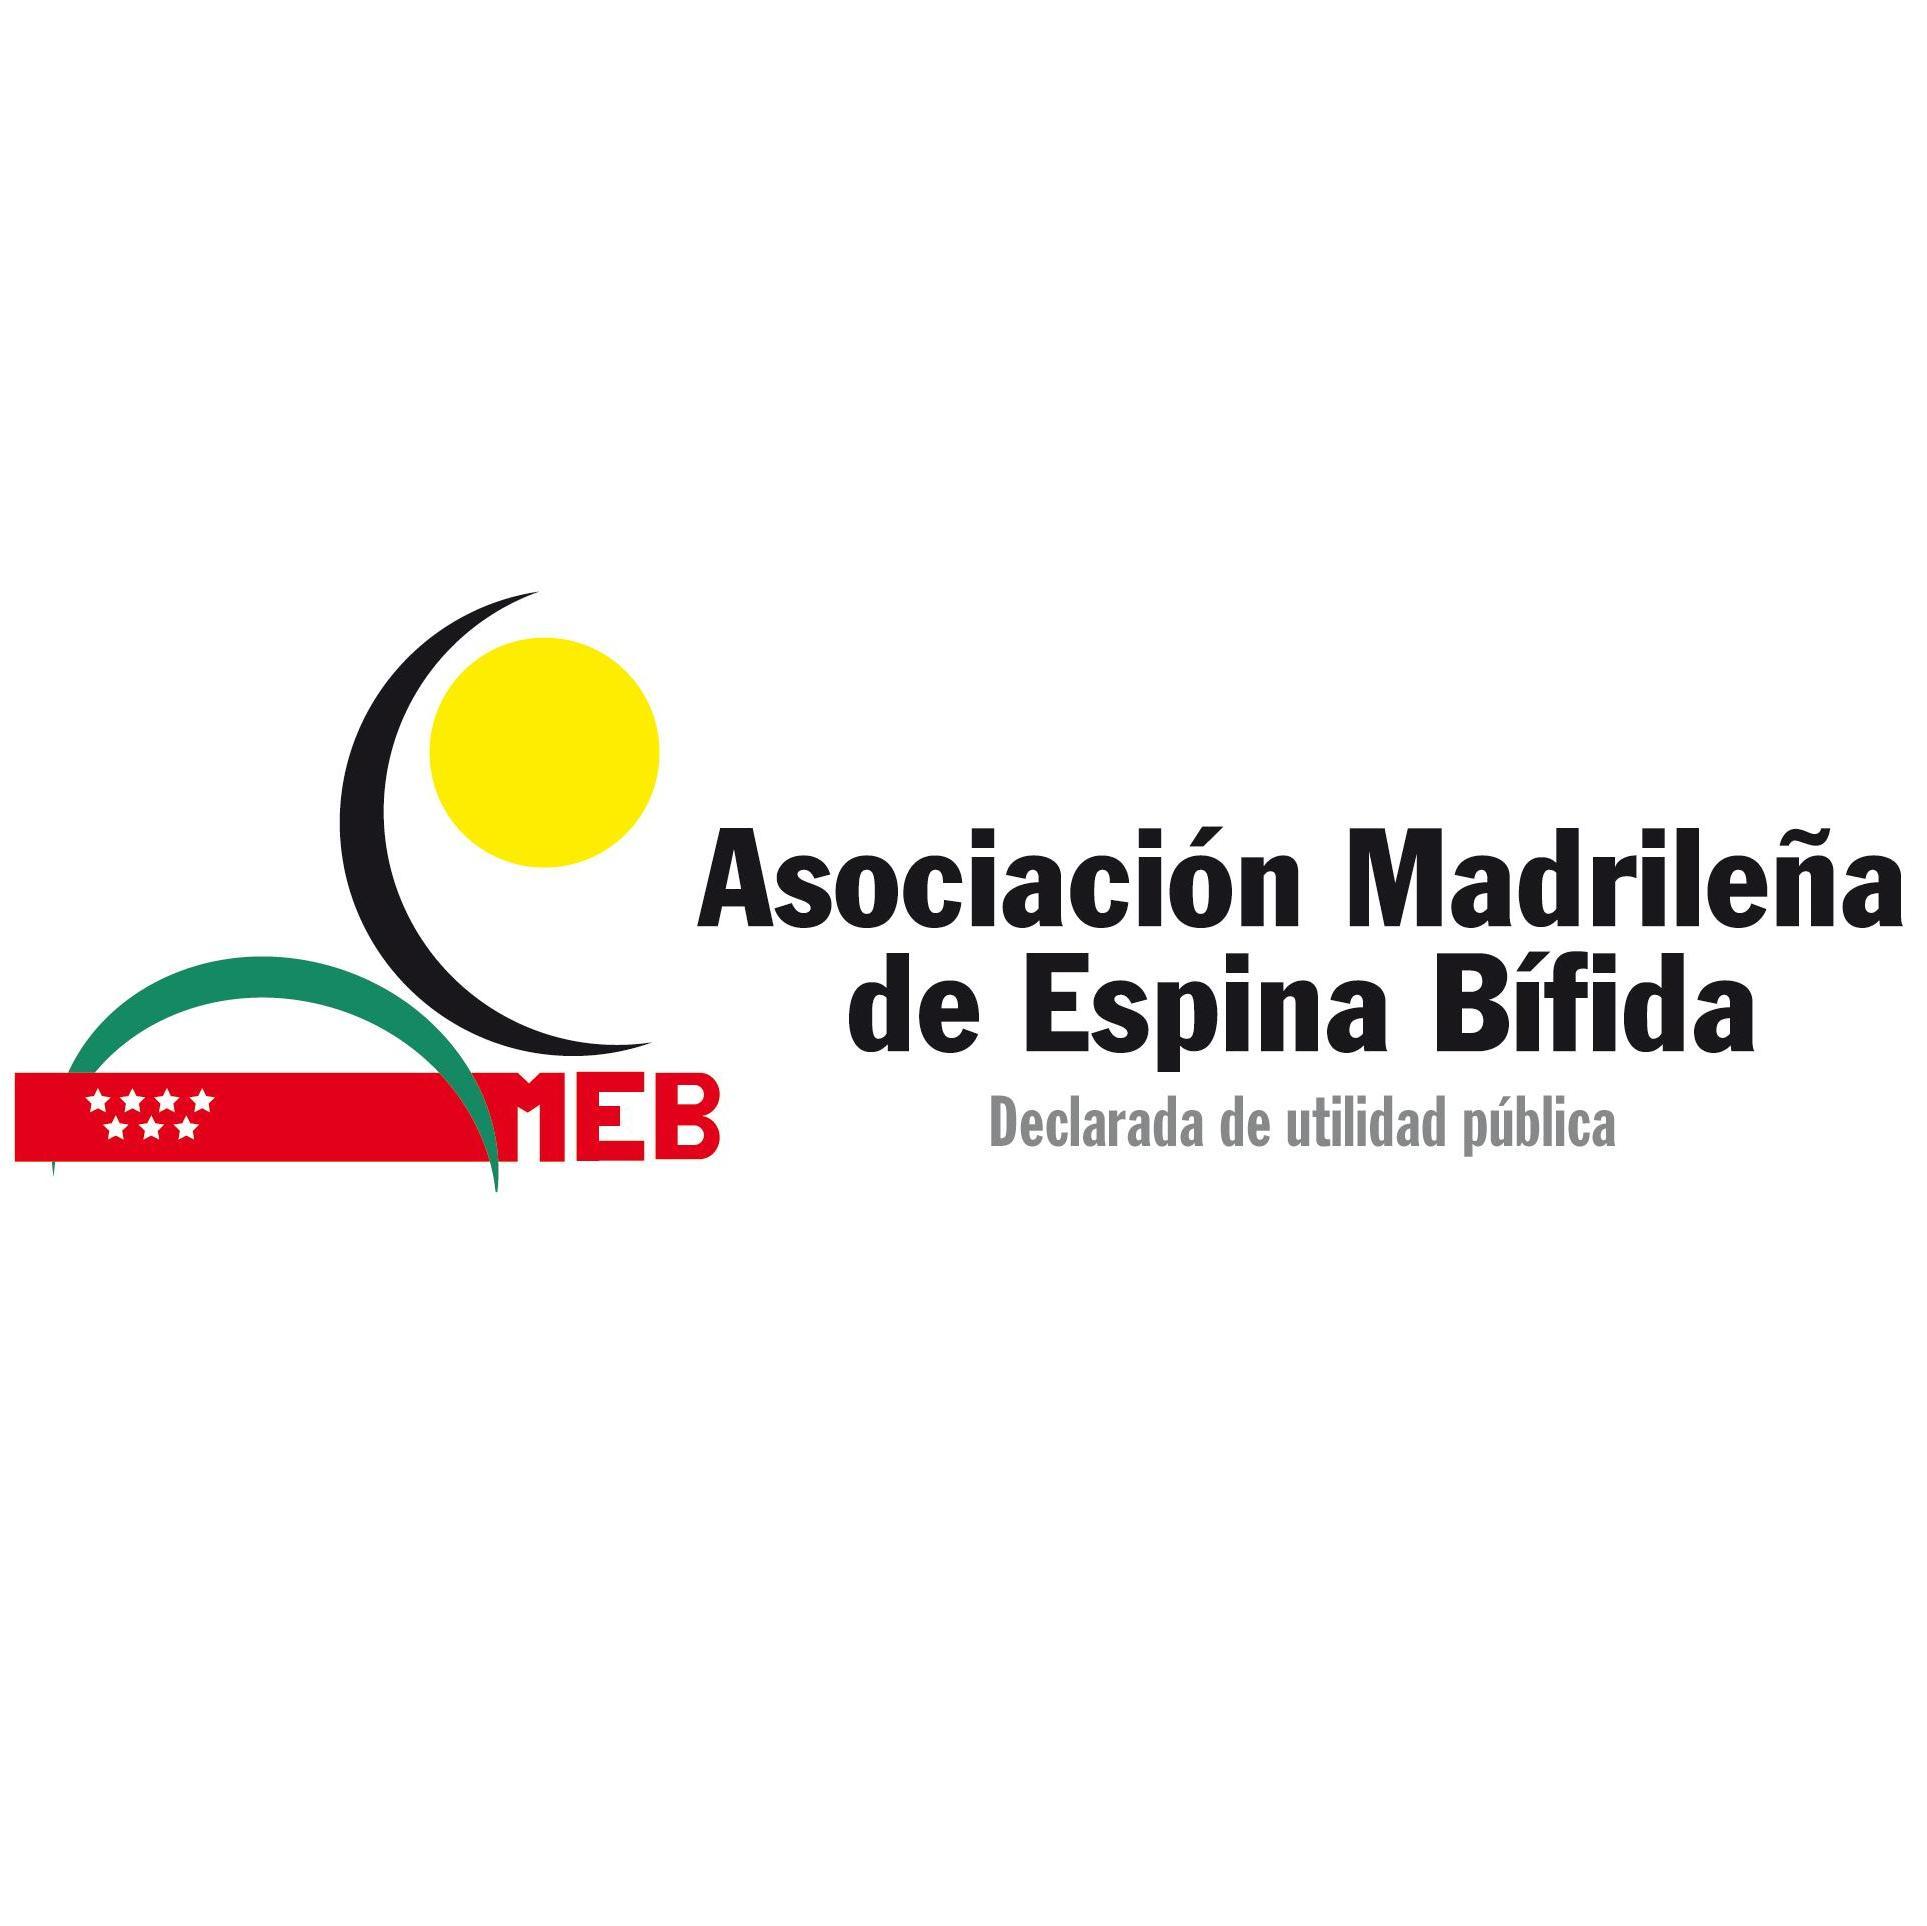 AMEB - Asociación Madrileña Espina Bífida